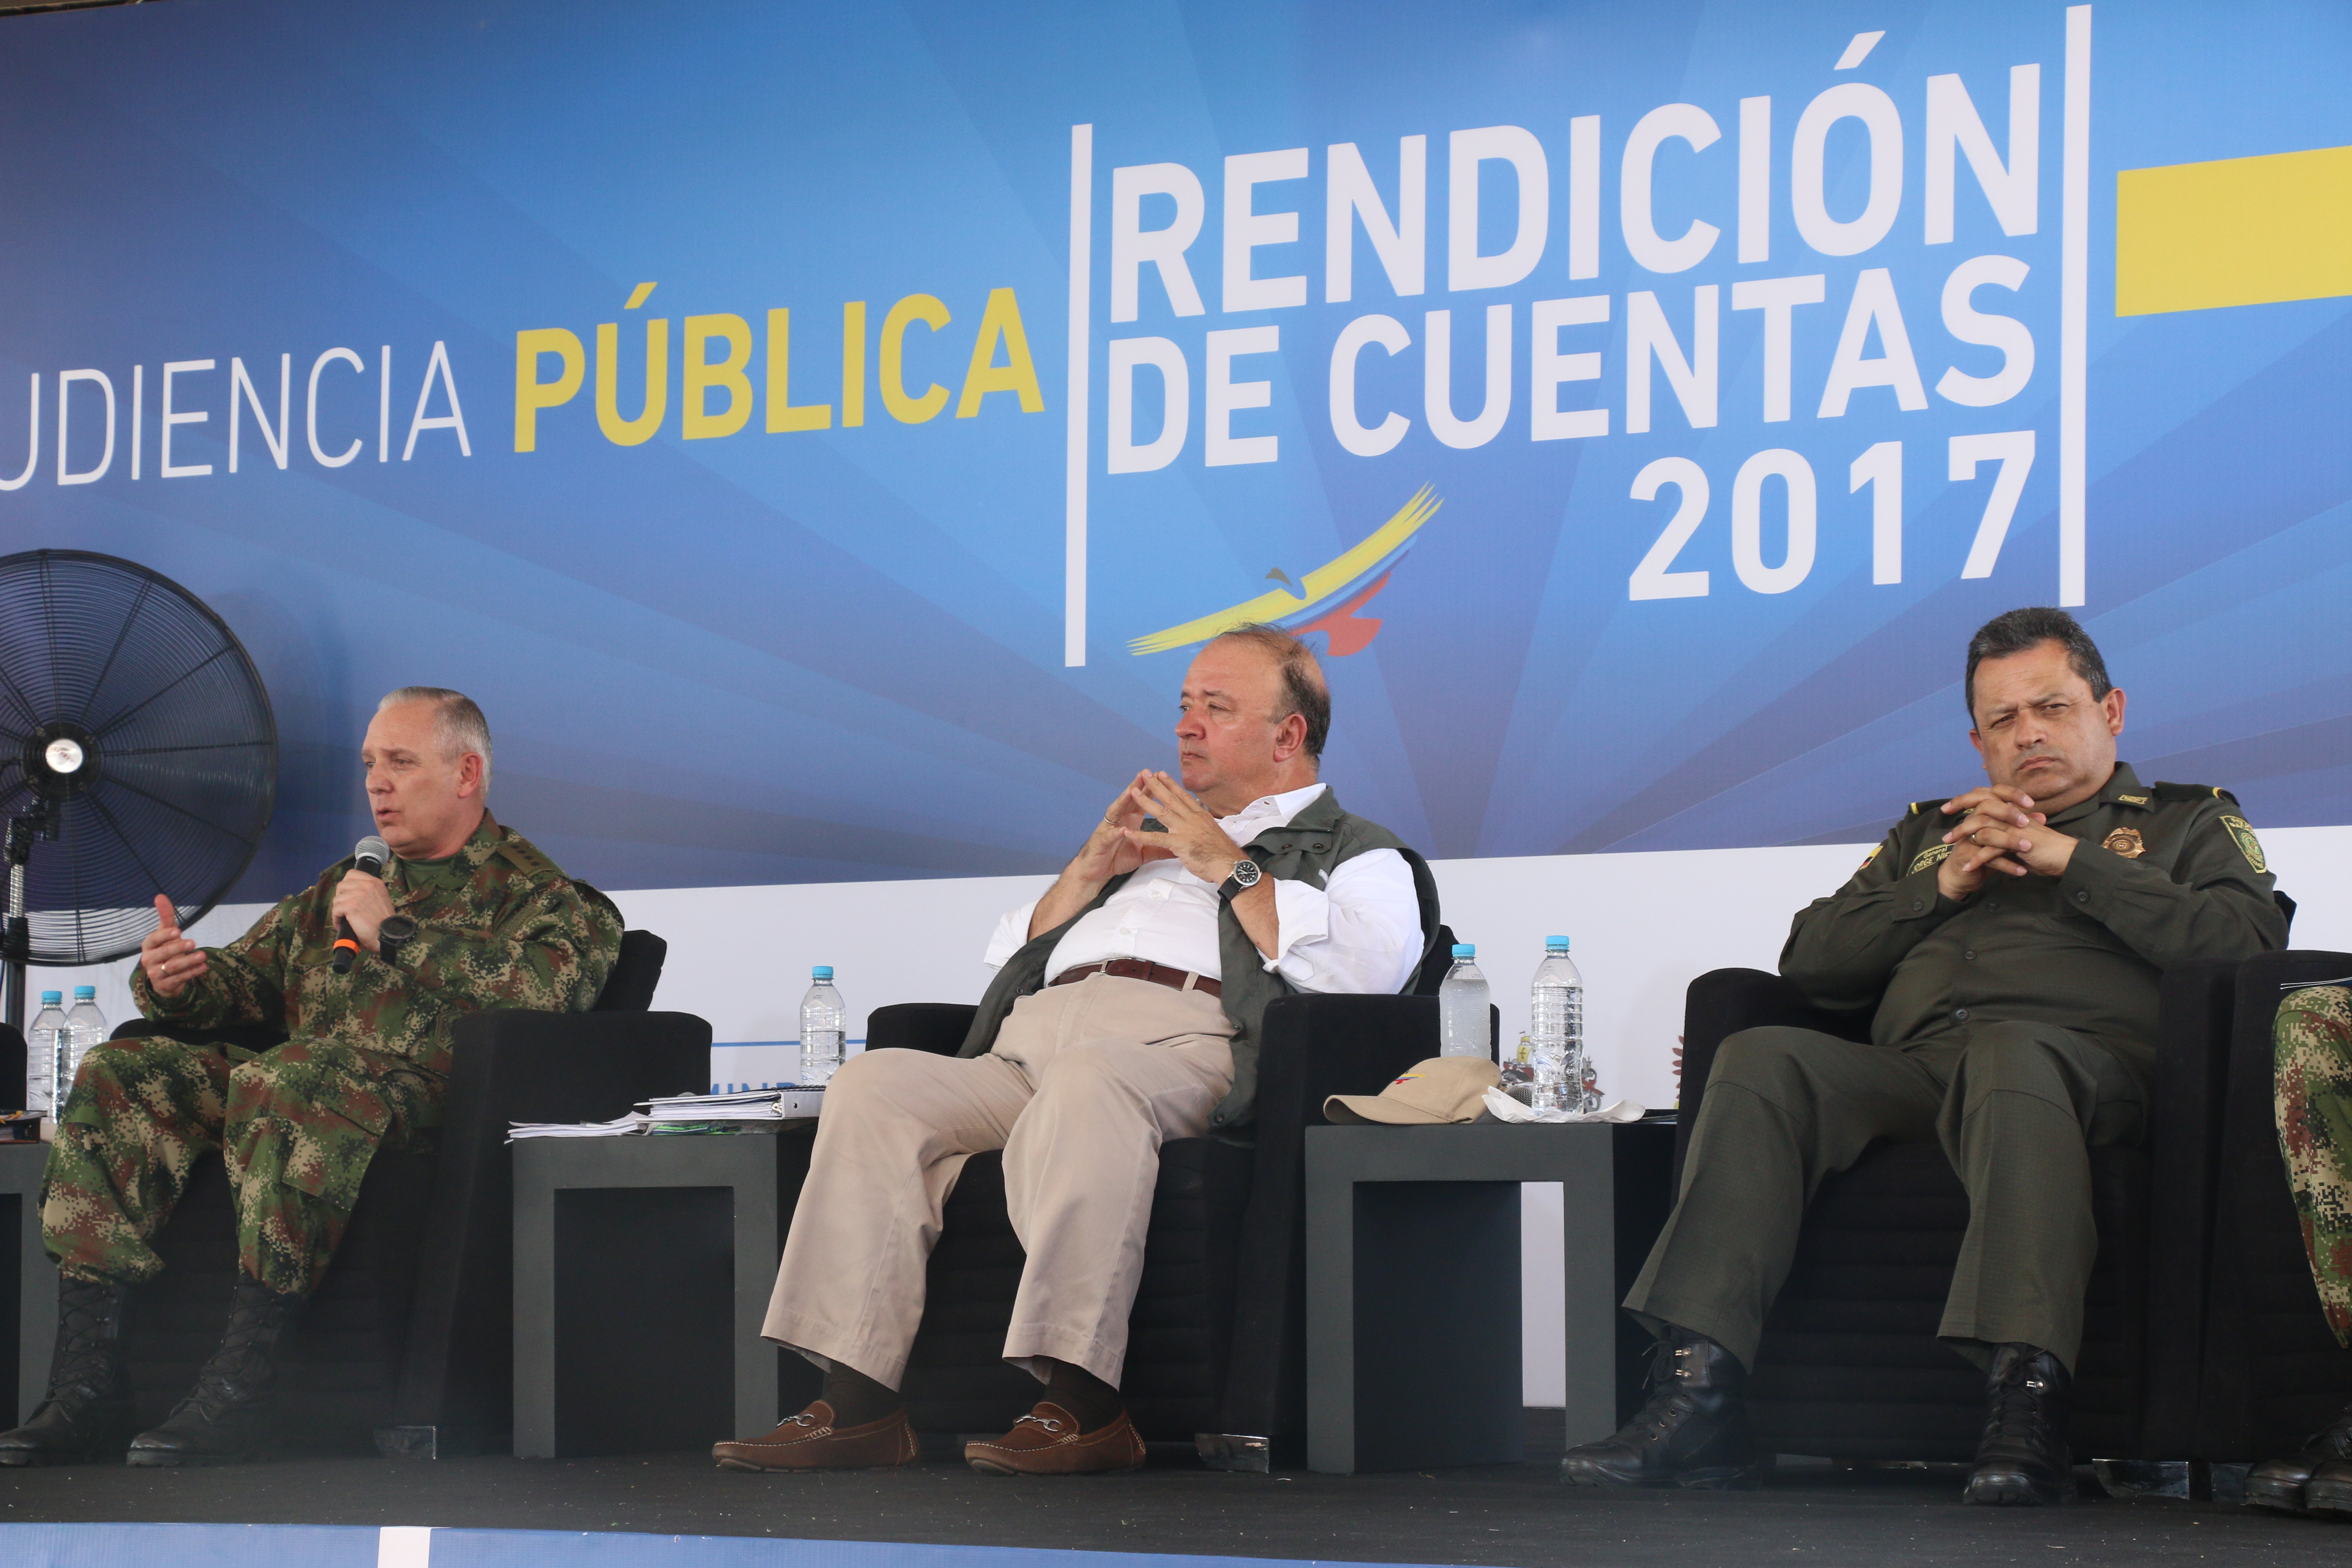 Rendición de cuentas del Ministro de defensa fue presentada en Caucasia, Antioquia